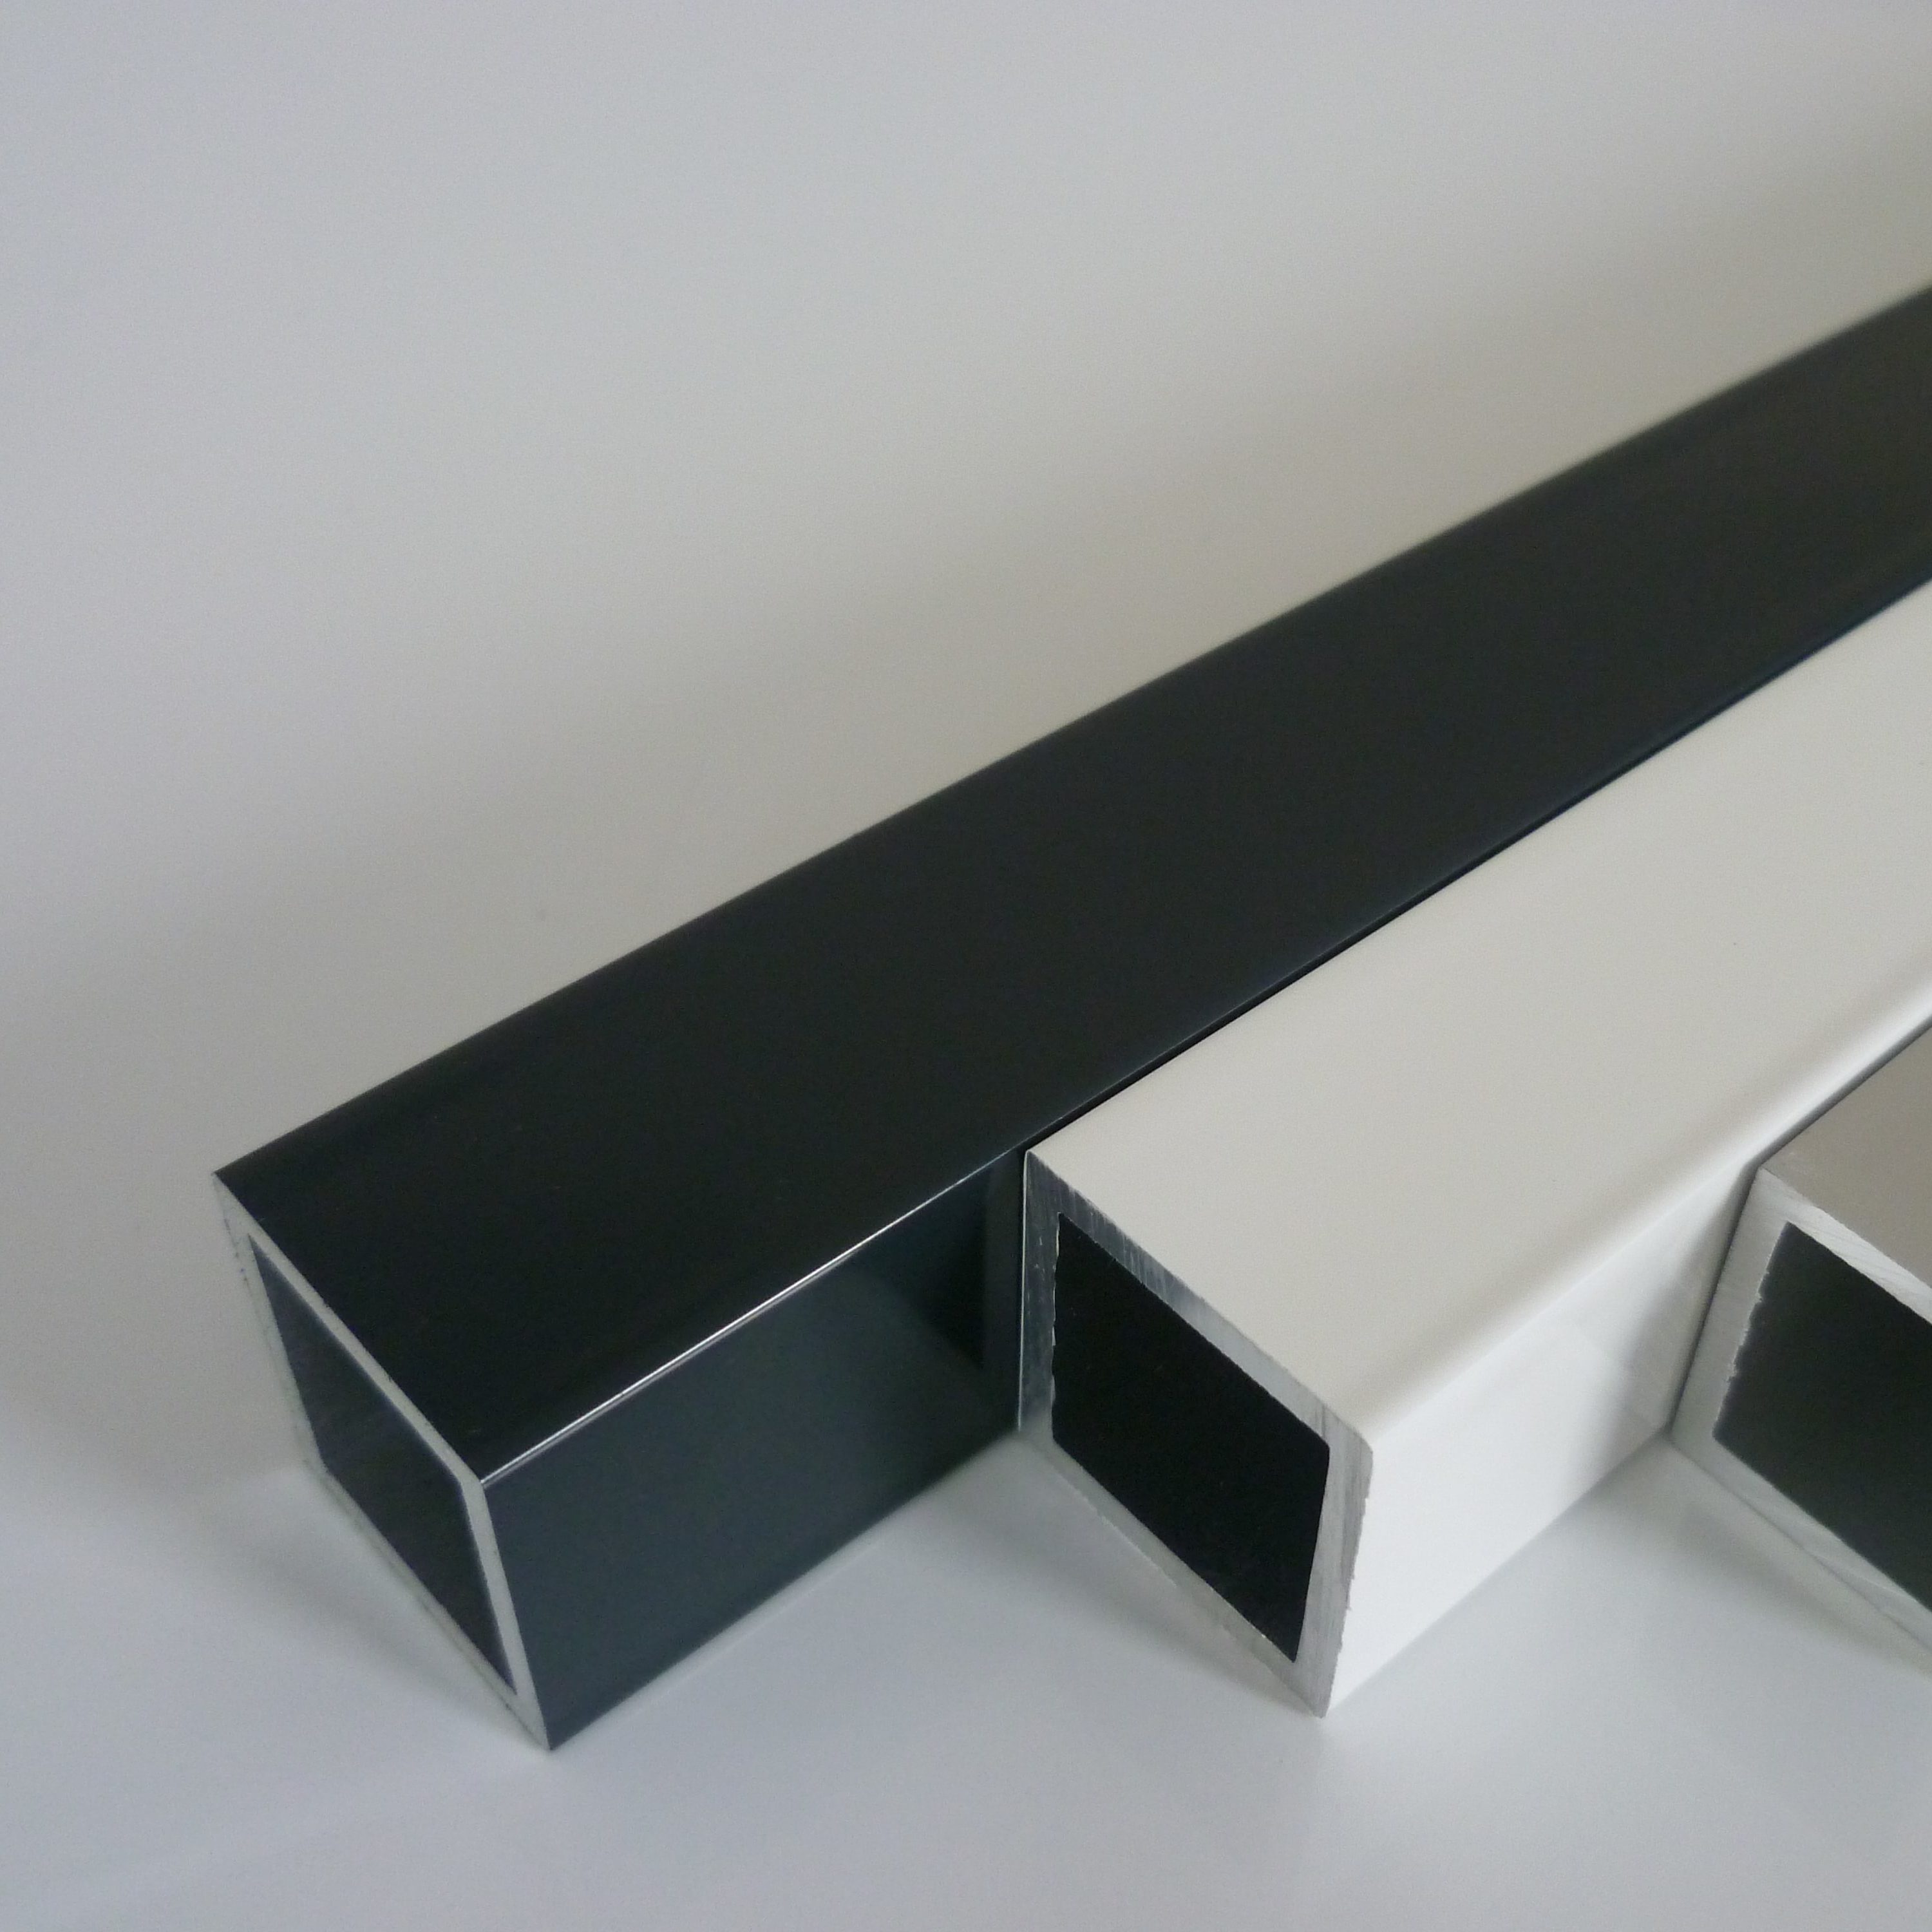 Aluminium Vierkantrohr pulverbeschichtet weiß RAL 9016 – 50 x 20 x 2 mm – Länge 2000 mm (2m)